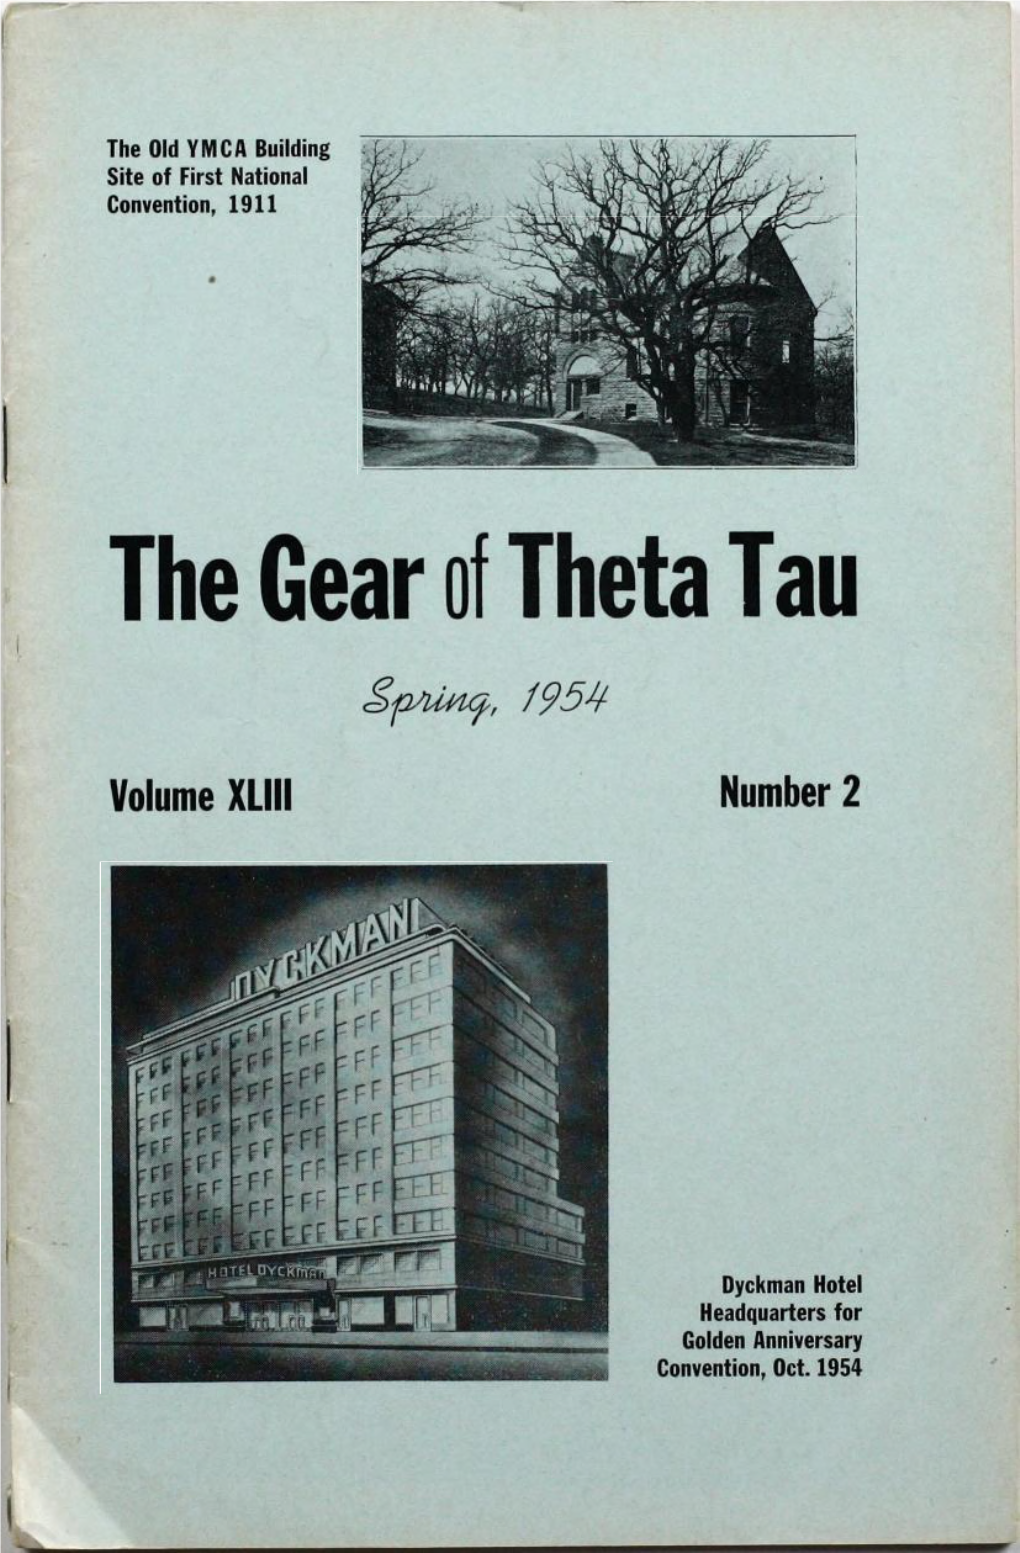 The Gear of Theta Tau